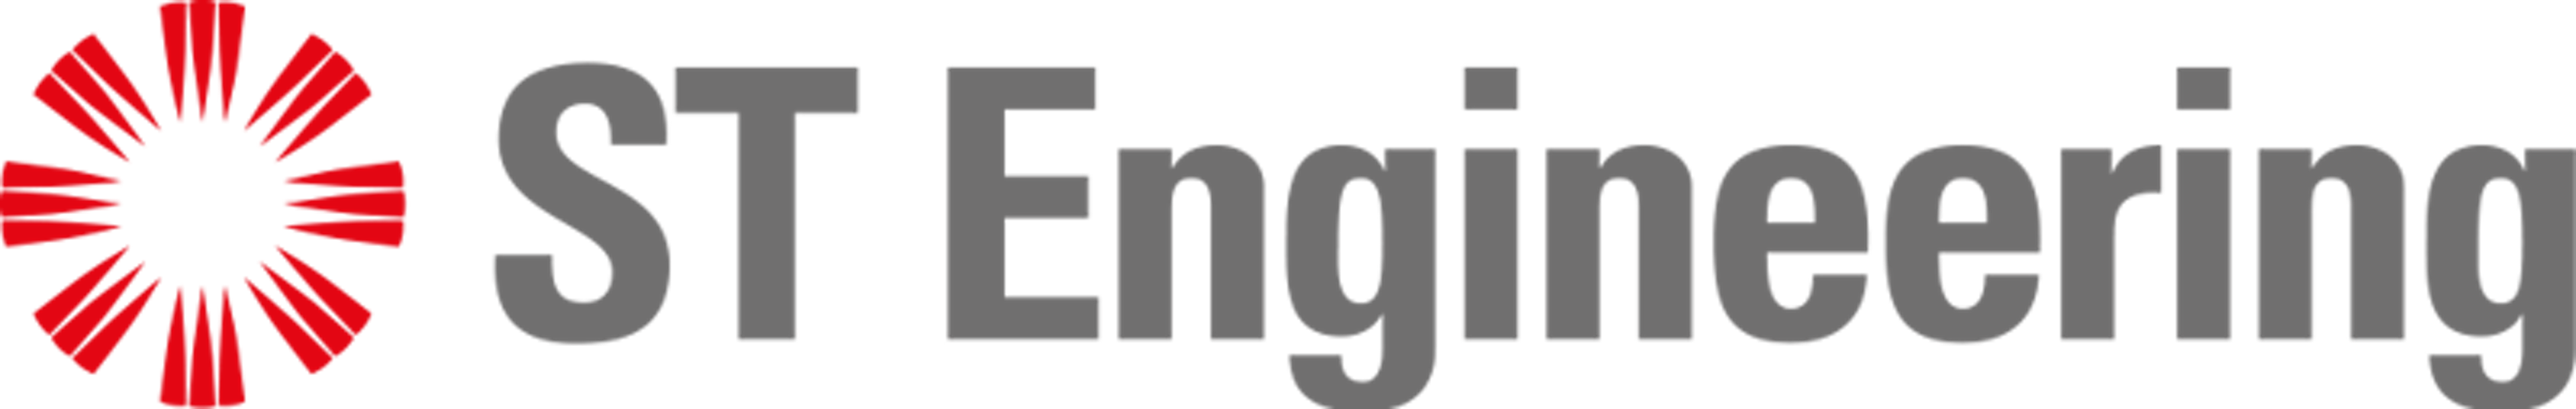 Stengg.com